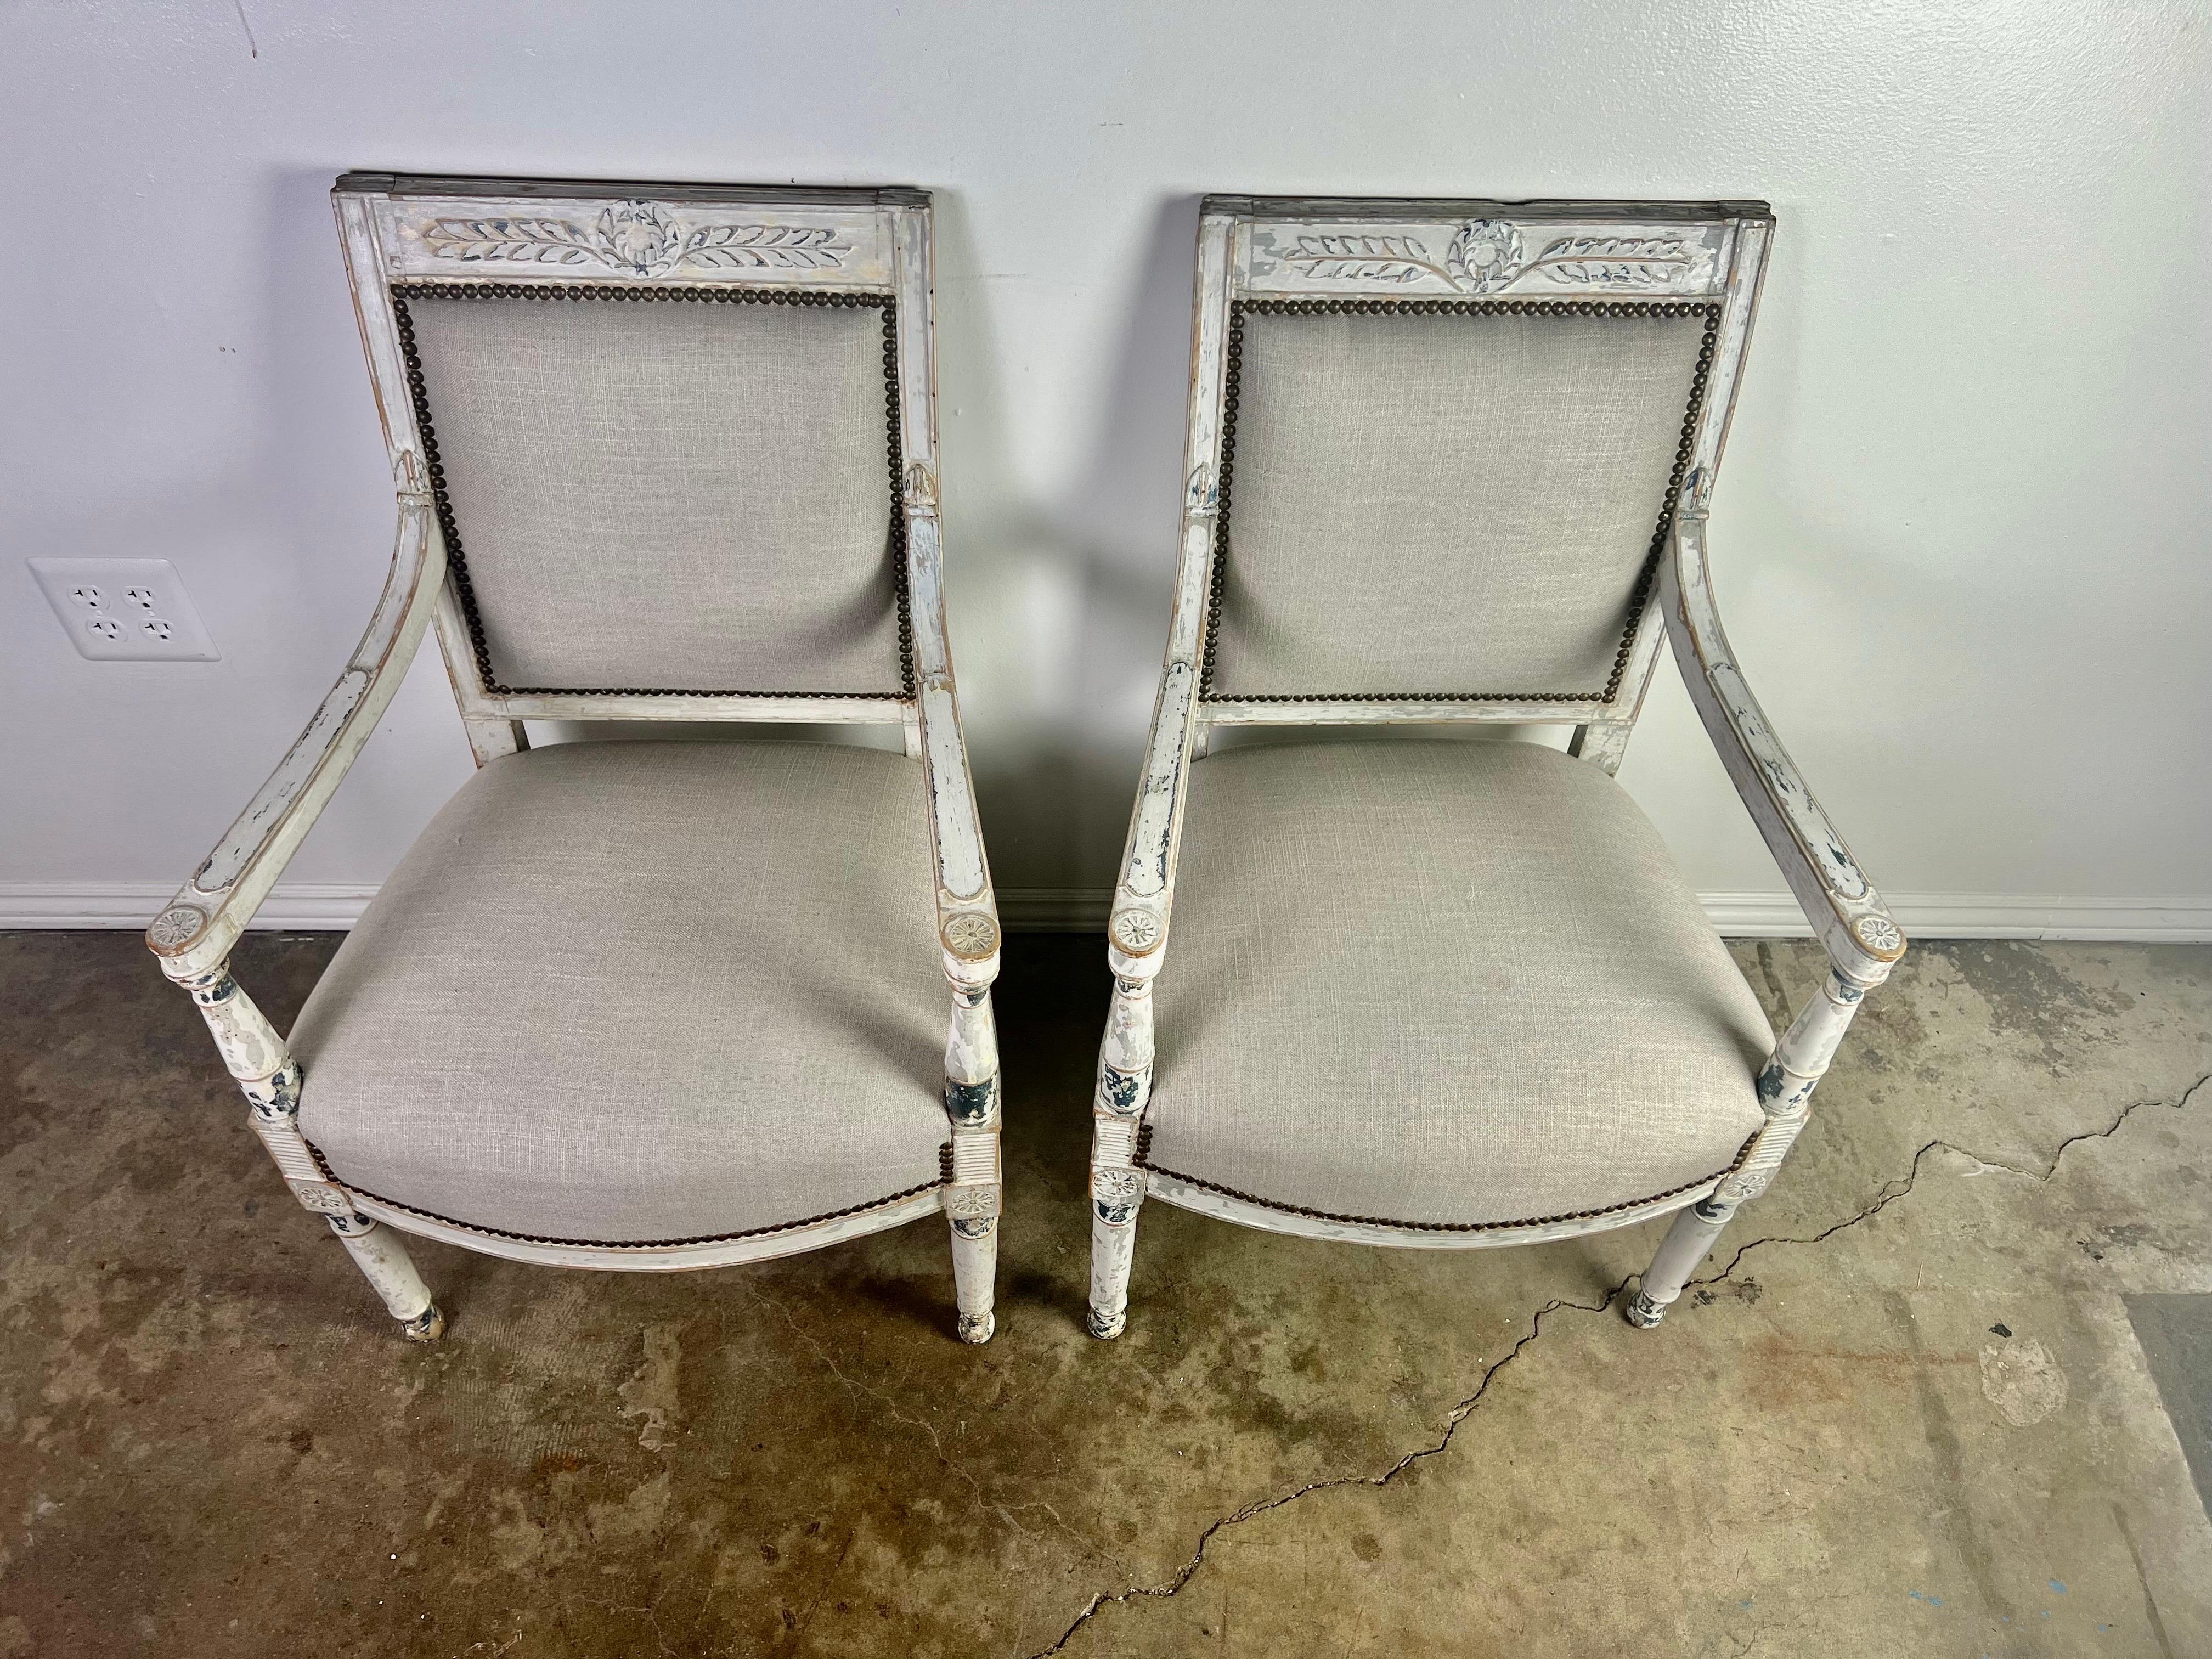 Paire de fauteuils peints de style suédois du 19e siècle.  Les chaises reposent sur quatre pieds droits cannelés.  Le haut des chaises est orné d'une feuille de laurier sculptée.  Les fauteuils ont été récemment recouverts d'un lin gris avec une